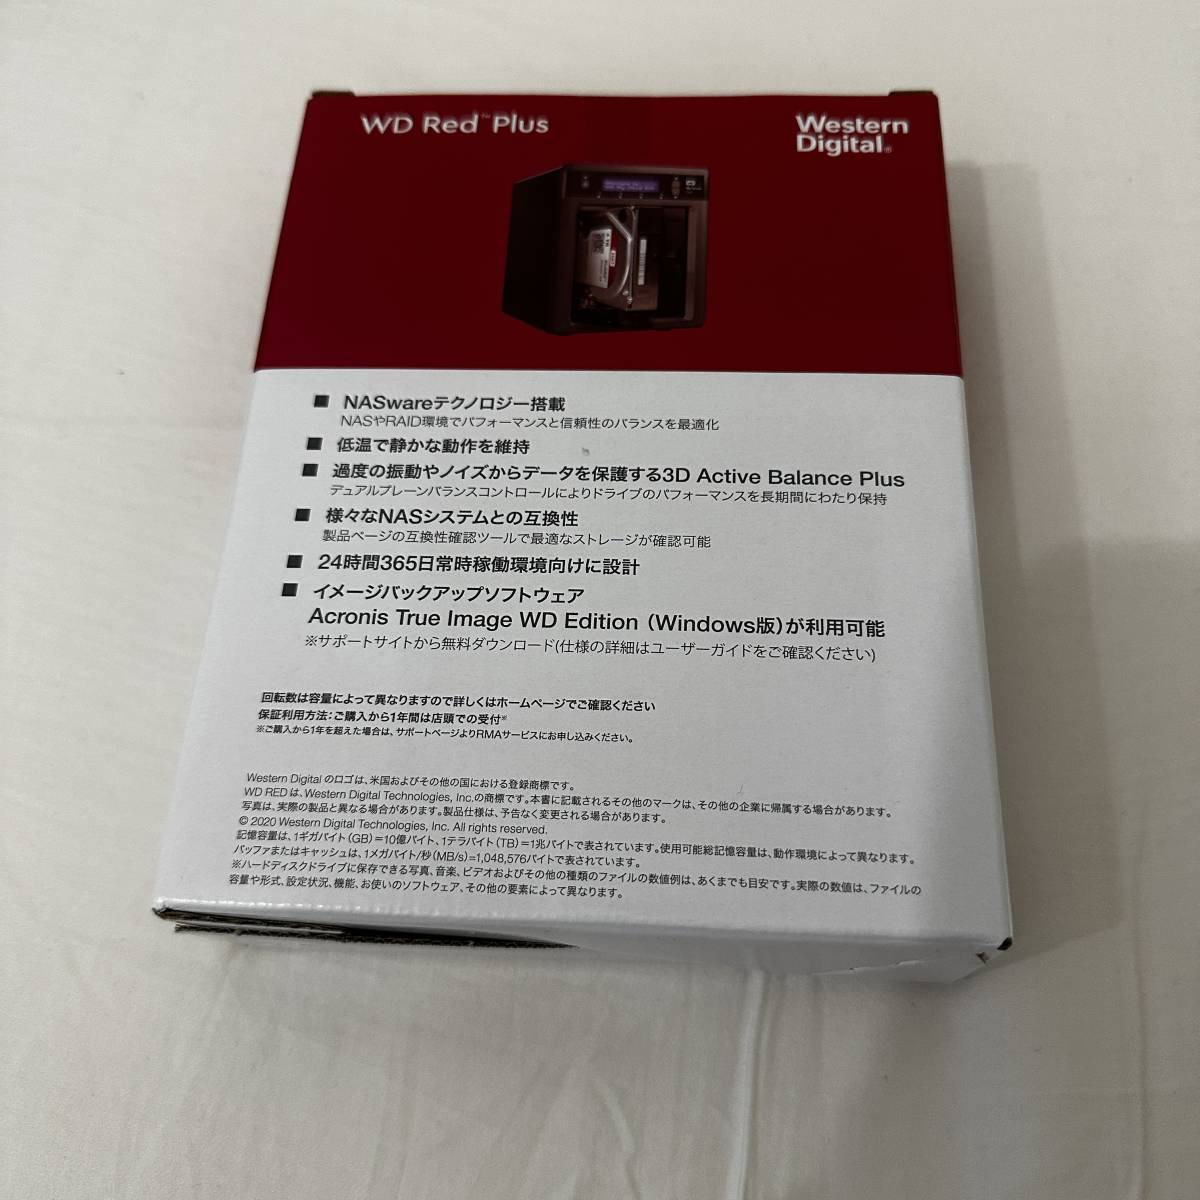 新品未使用WD Red Plus ウエスタンデジタル3.5インチHDD